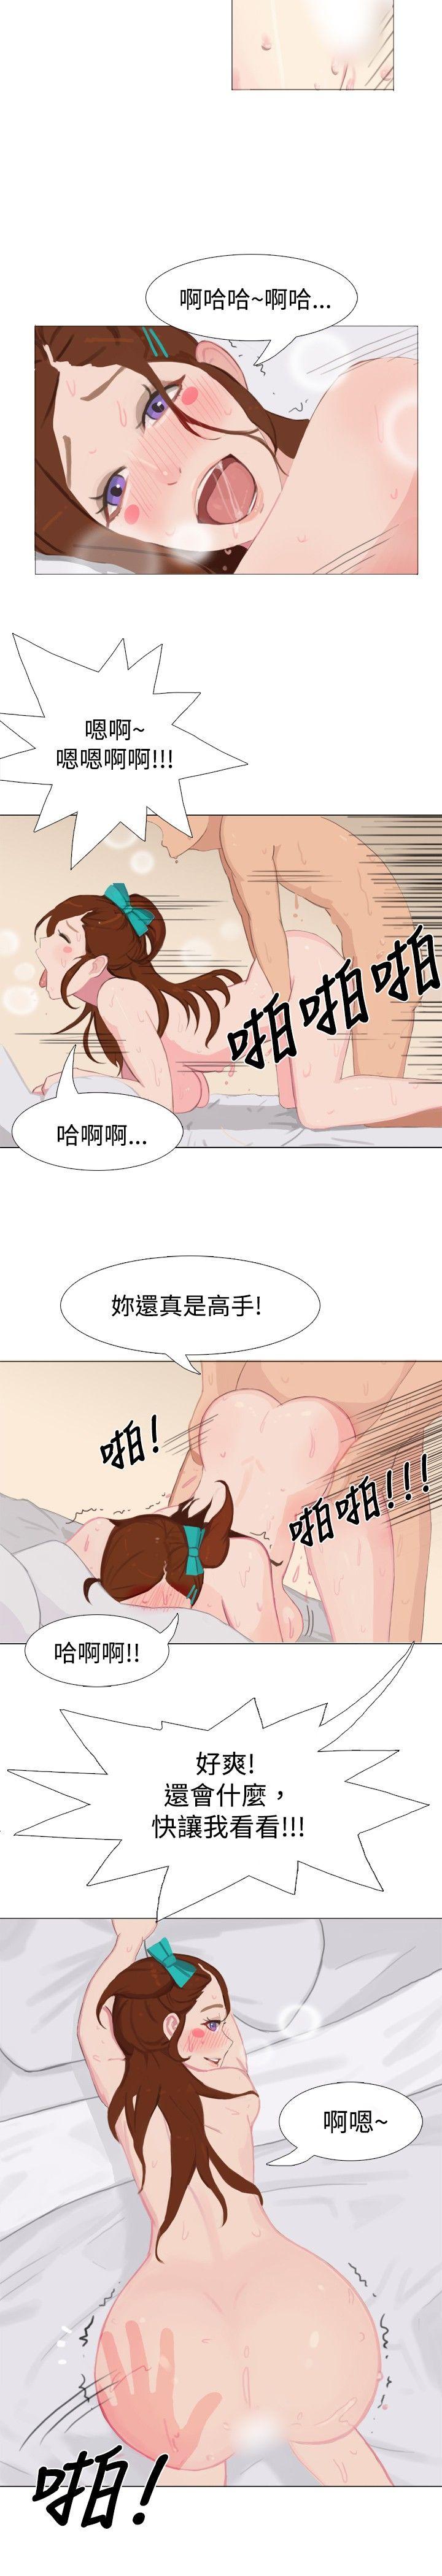 秘密Story  清纯女的一夜情(中) 漫画图片9.jpg